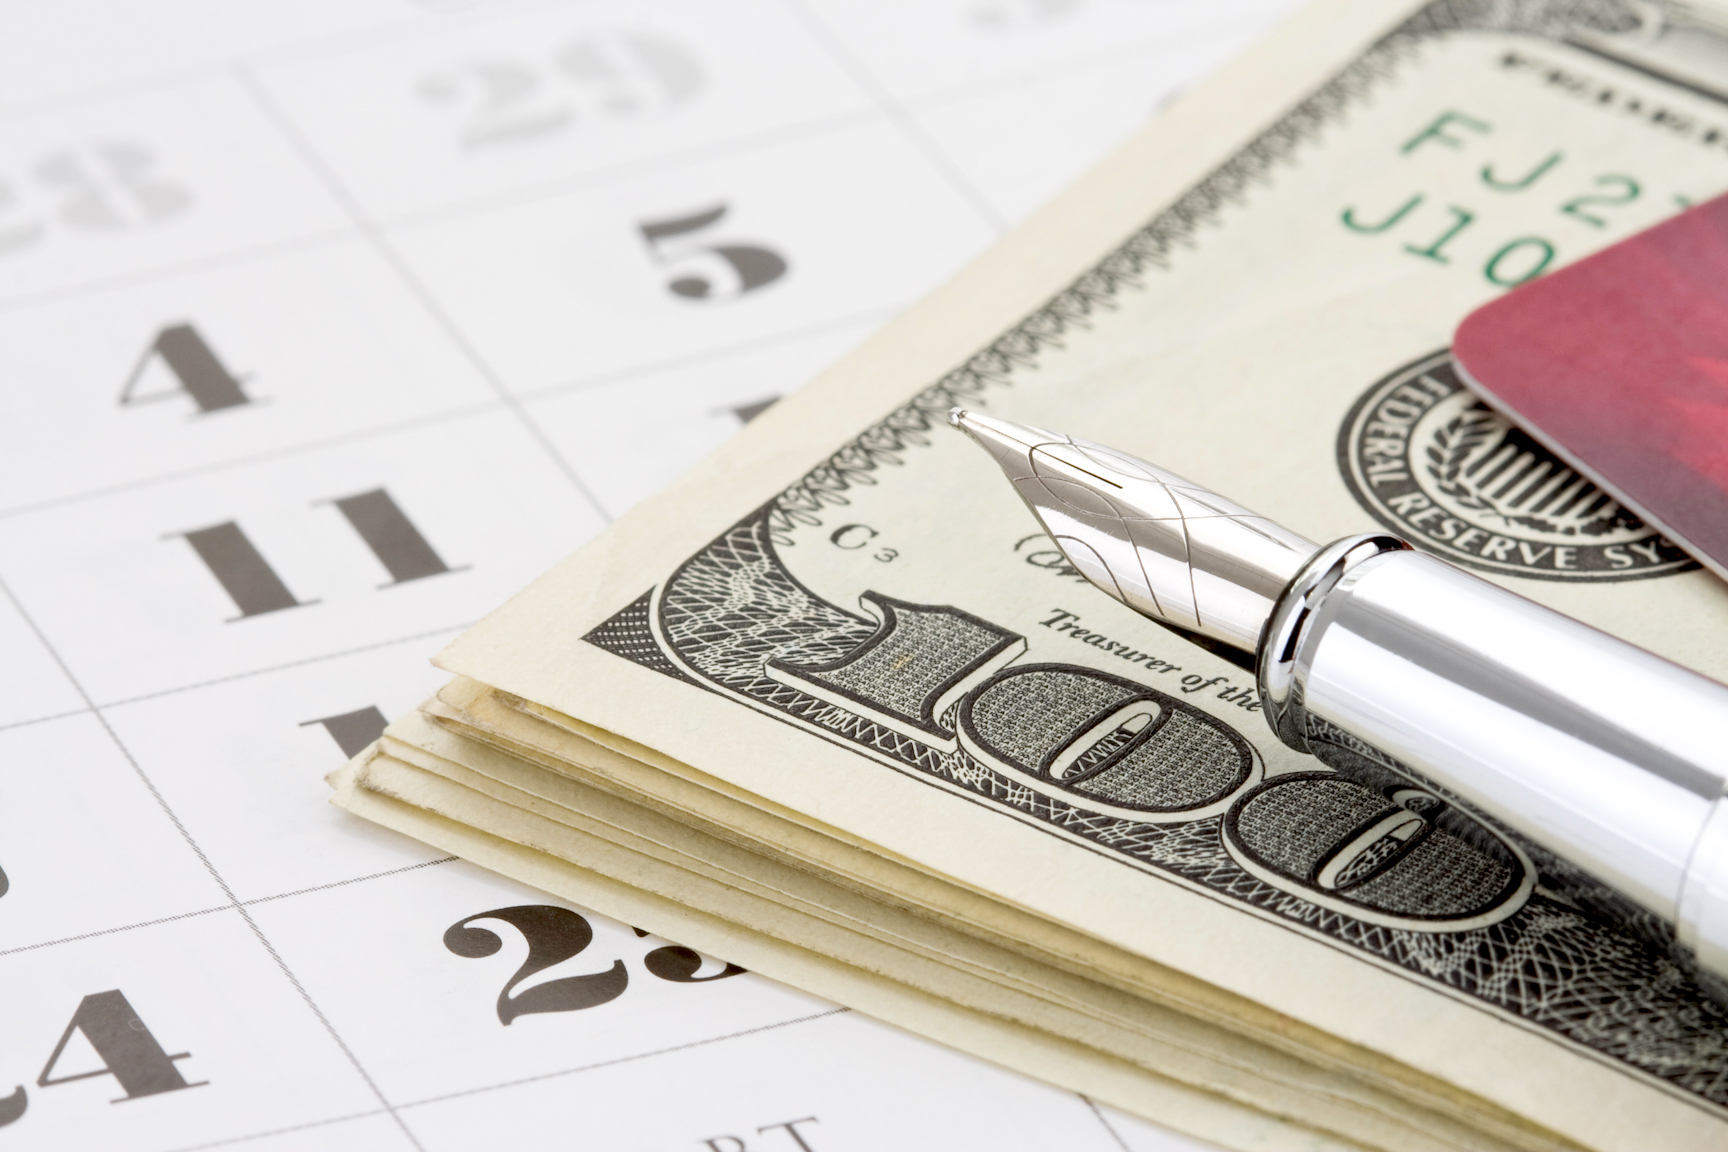 ink pen and dollar money on calendar background to symbolize the hidden costs of divorce litigation vs mediation